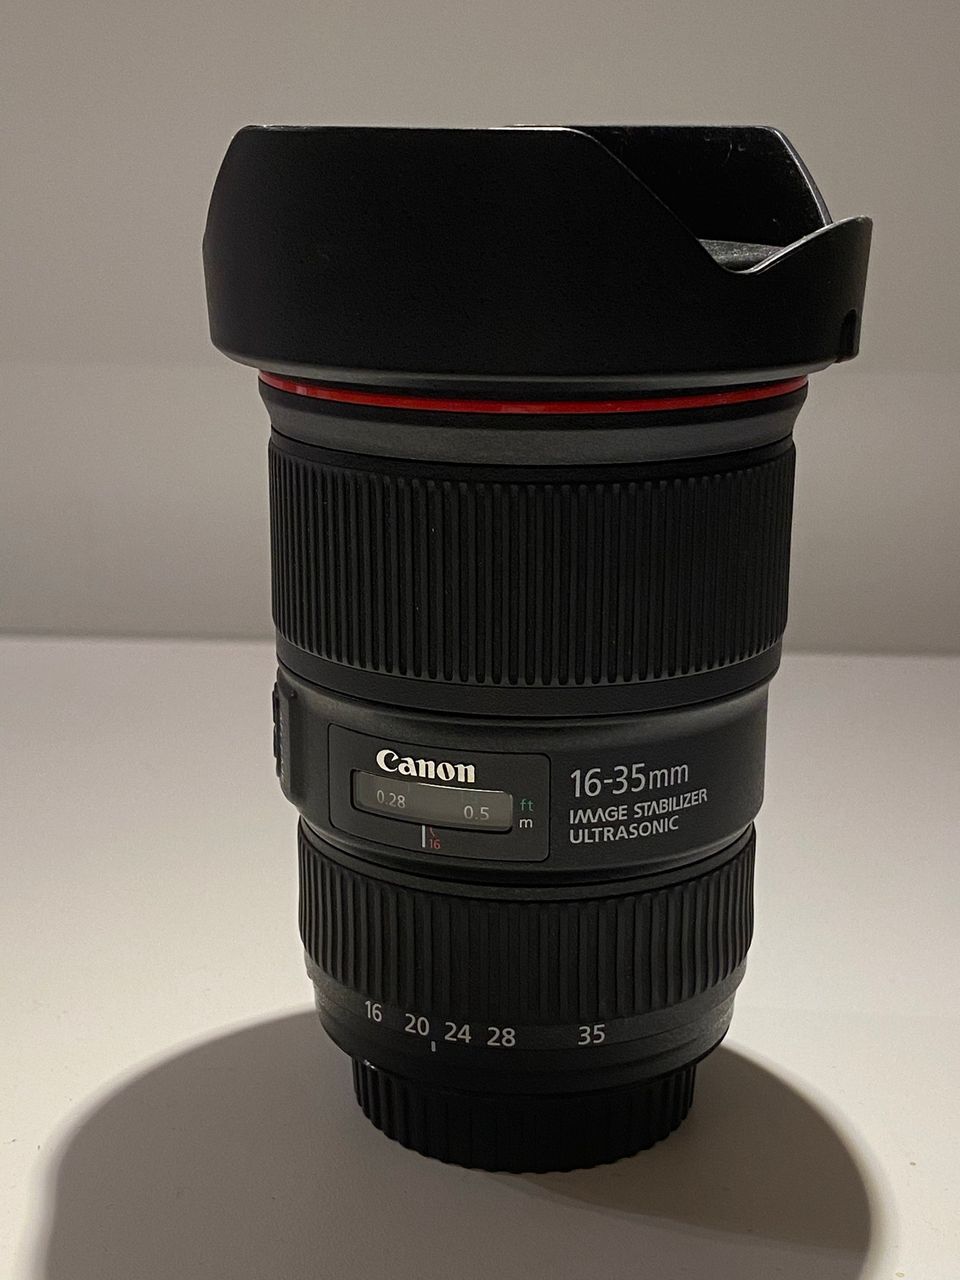 Canon 16-35 f/4 L IS USM laajakulma-objektiivi